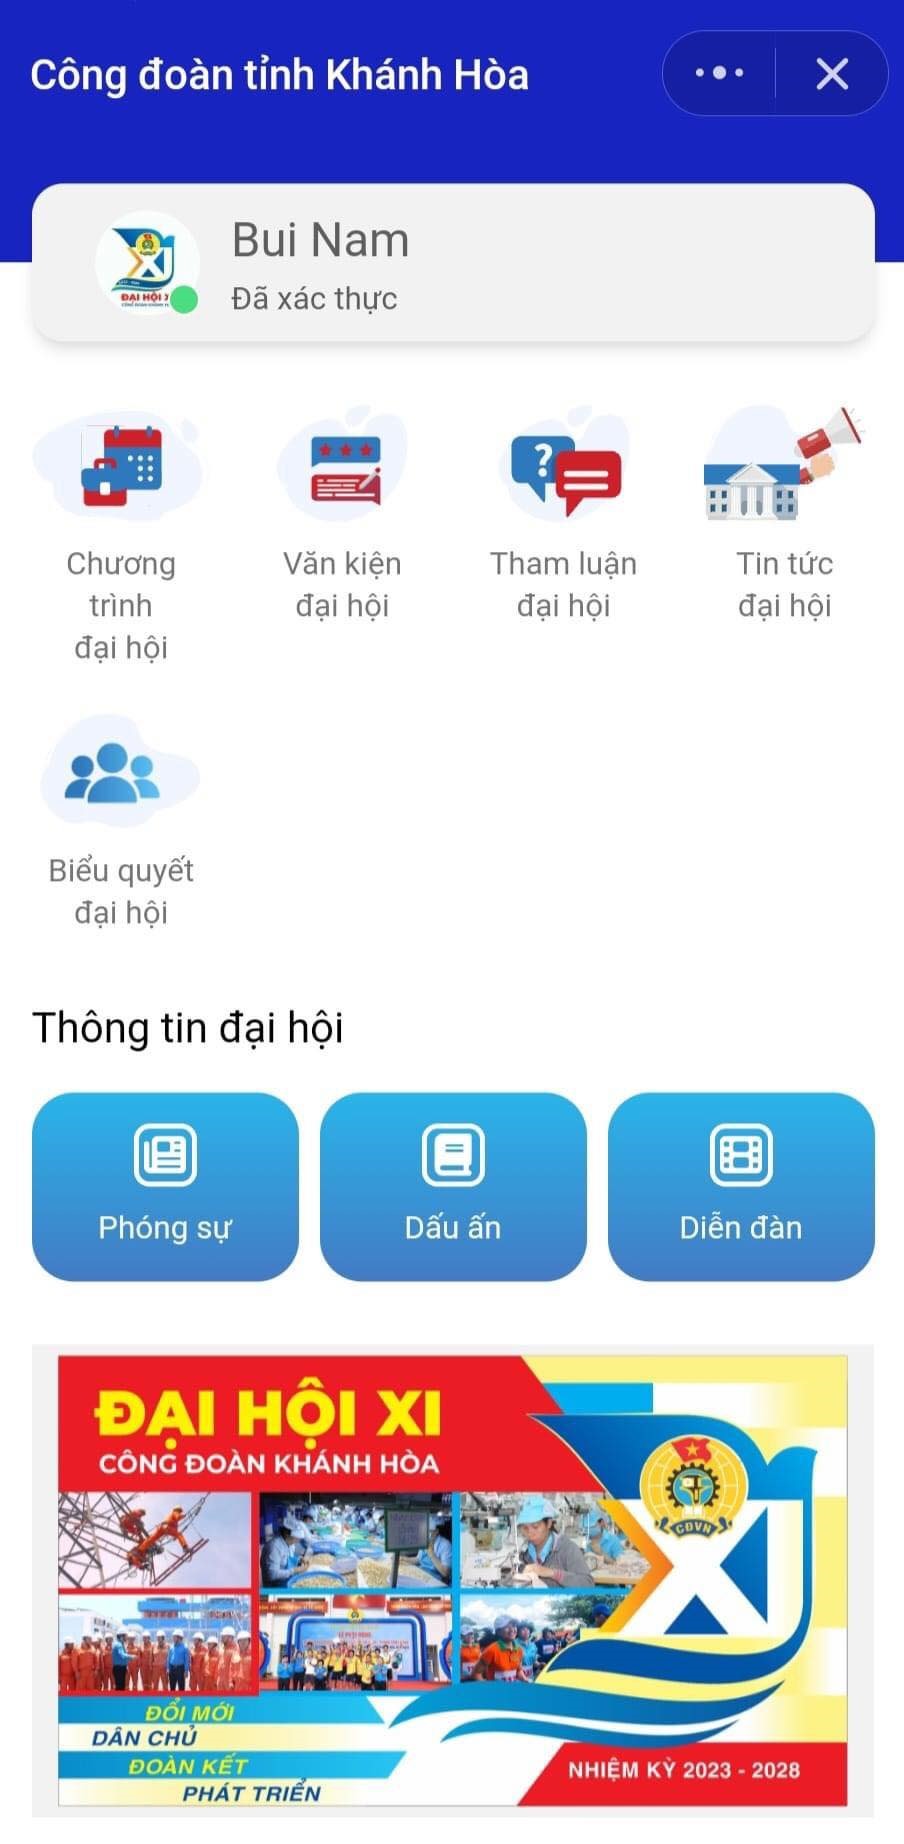 App về Đại hội XI Công đoàn Khánh Hoà với nhiều thông tin được cung cấp cho đại biểu. Ảnh: Phương Linh